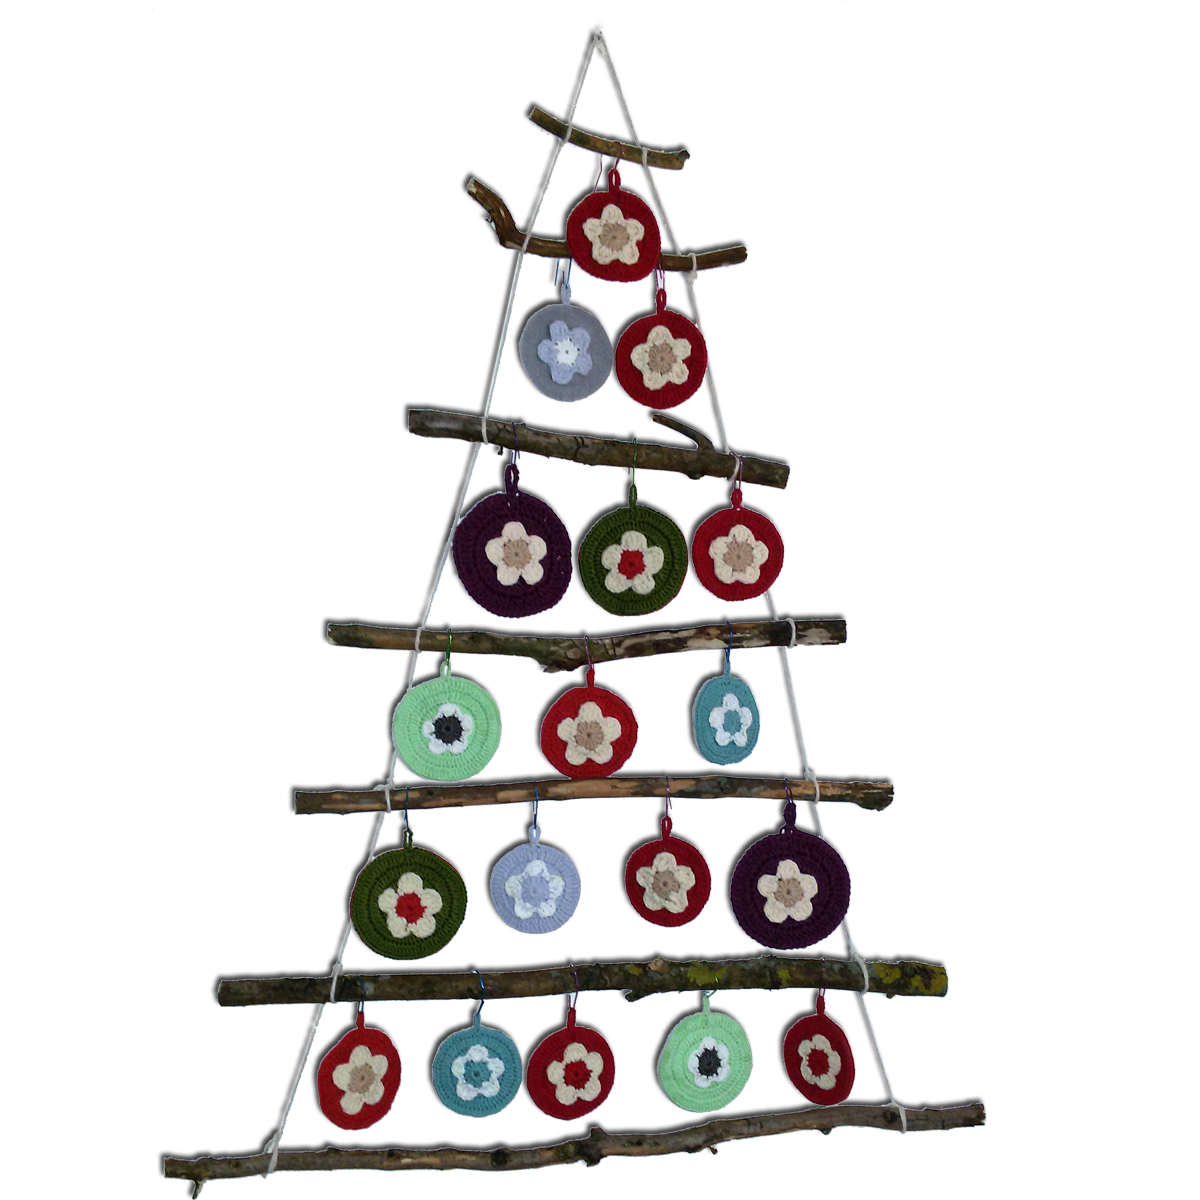 10 Decorazioni Natalizie Alluncinetto.10 Decorazioni Per Albero Di Natale A Uncinetto Effetti Crochet